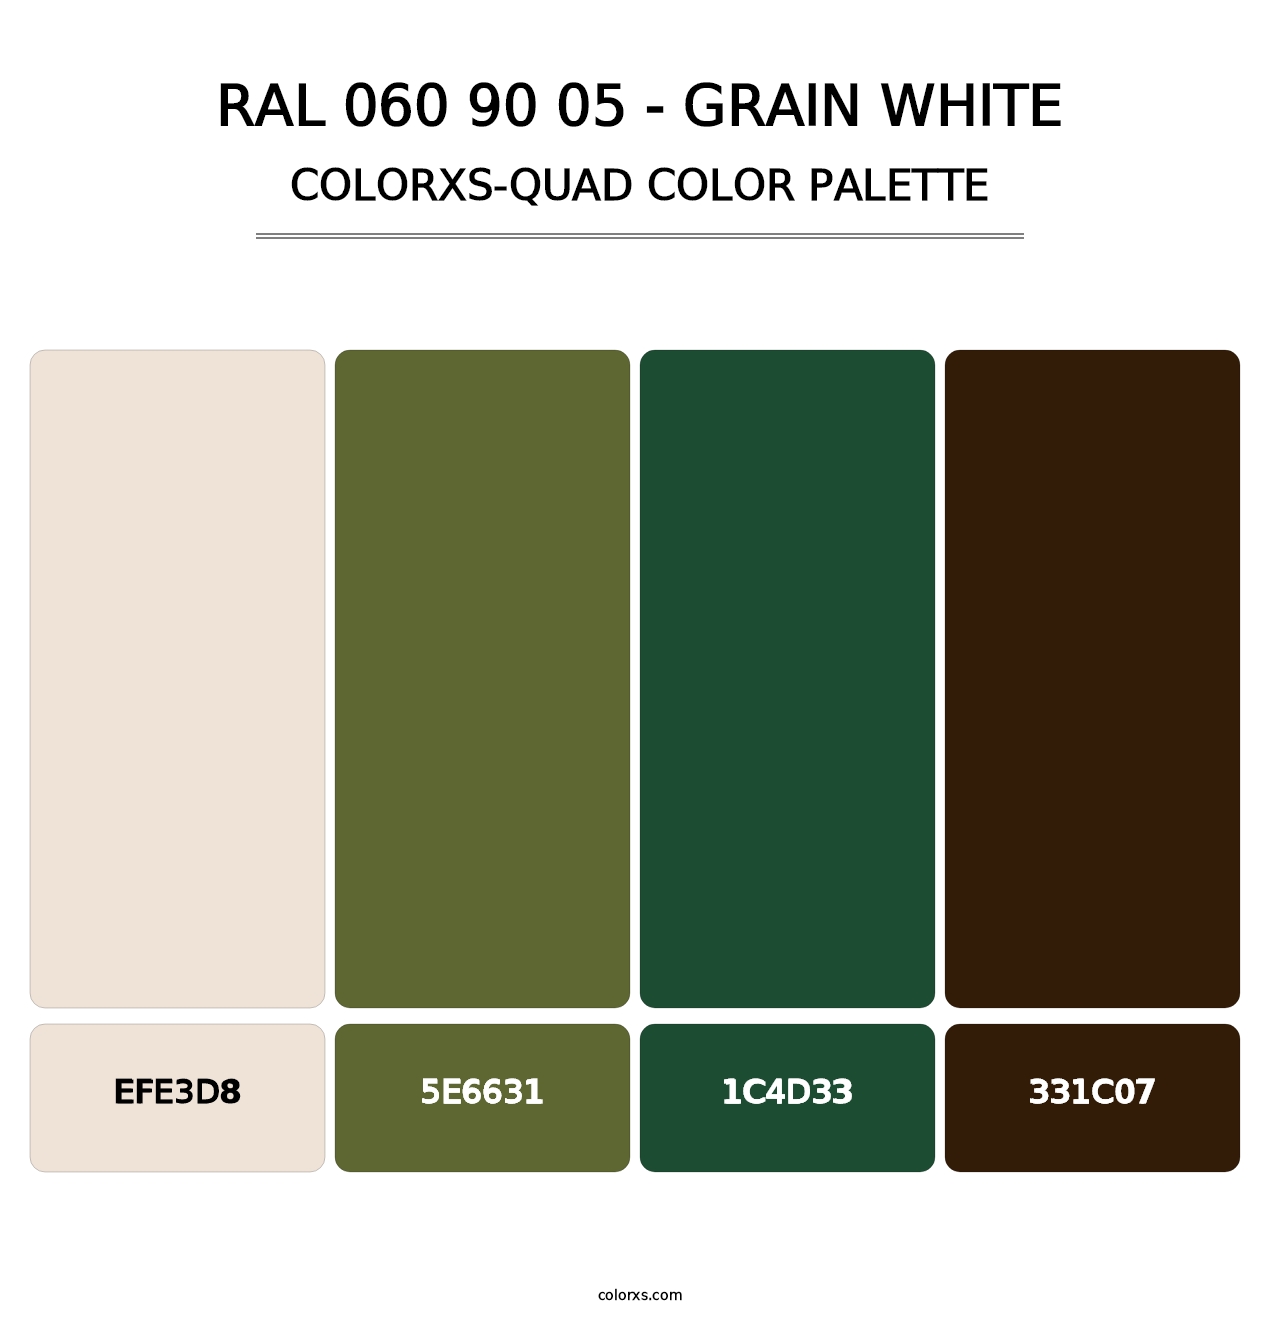 RAL 060 90 05 - Grain White - Colorxs Quad Palette